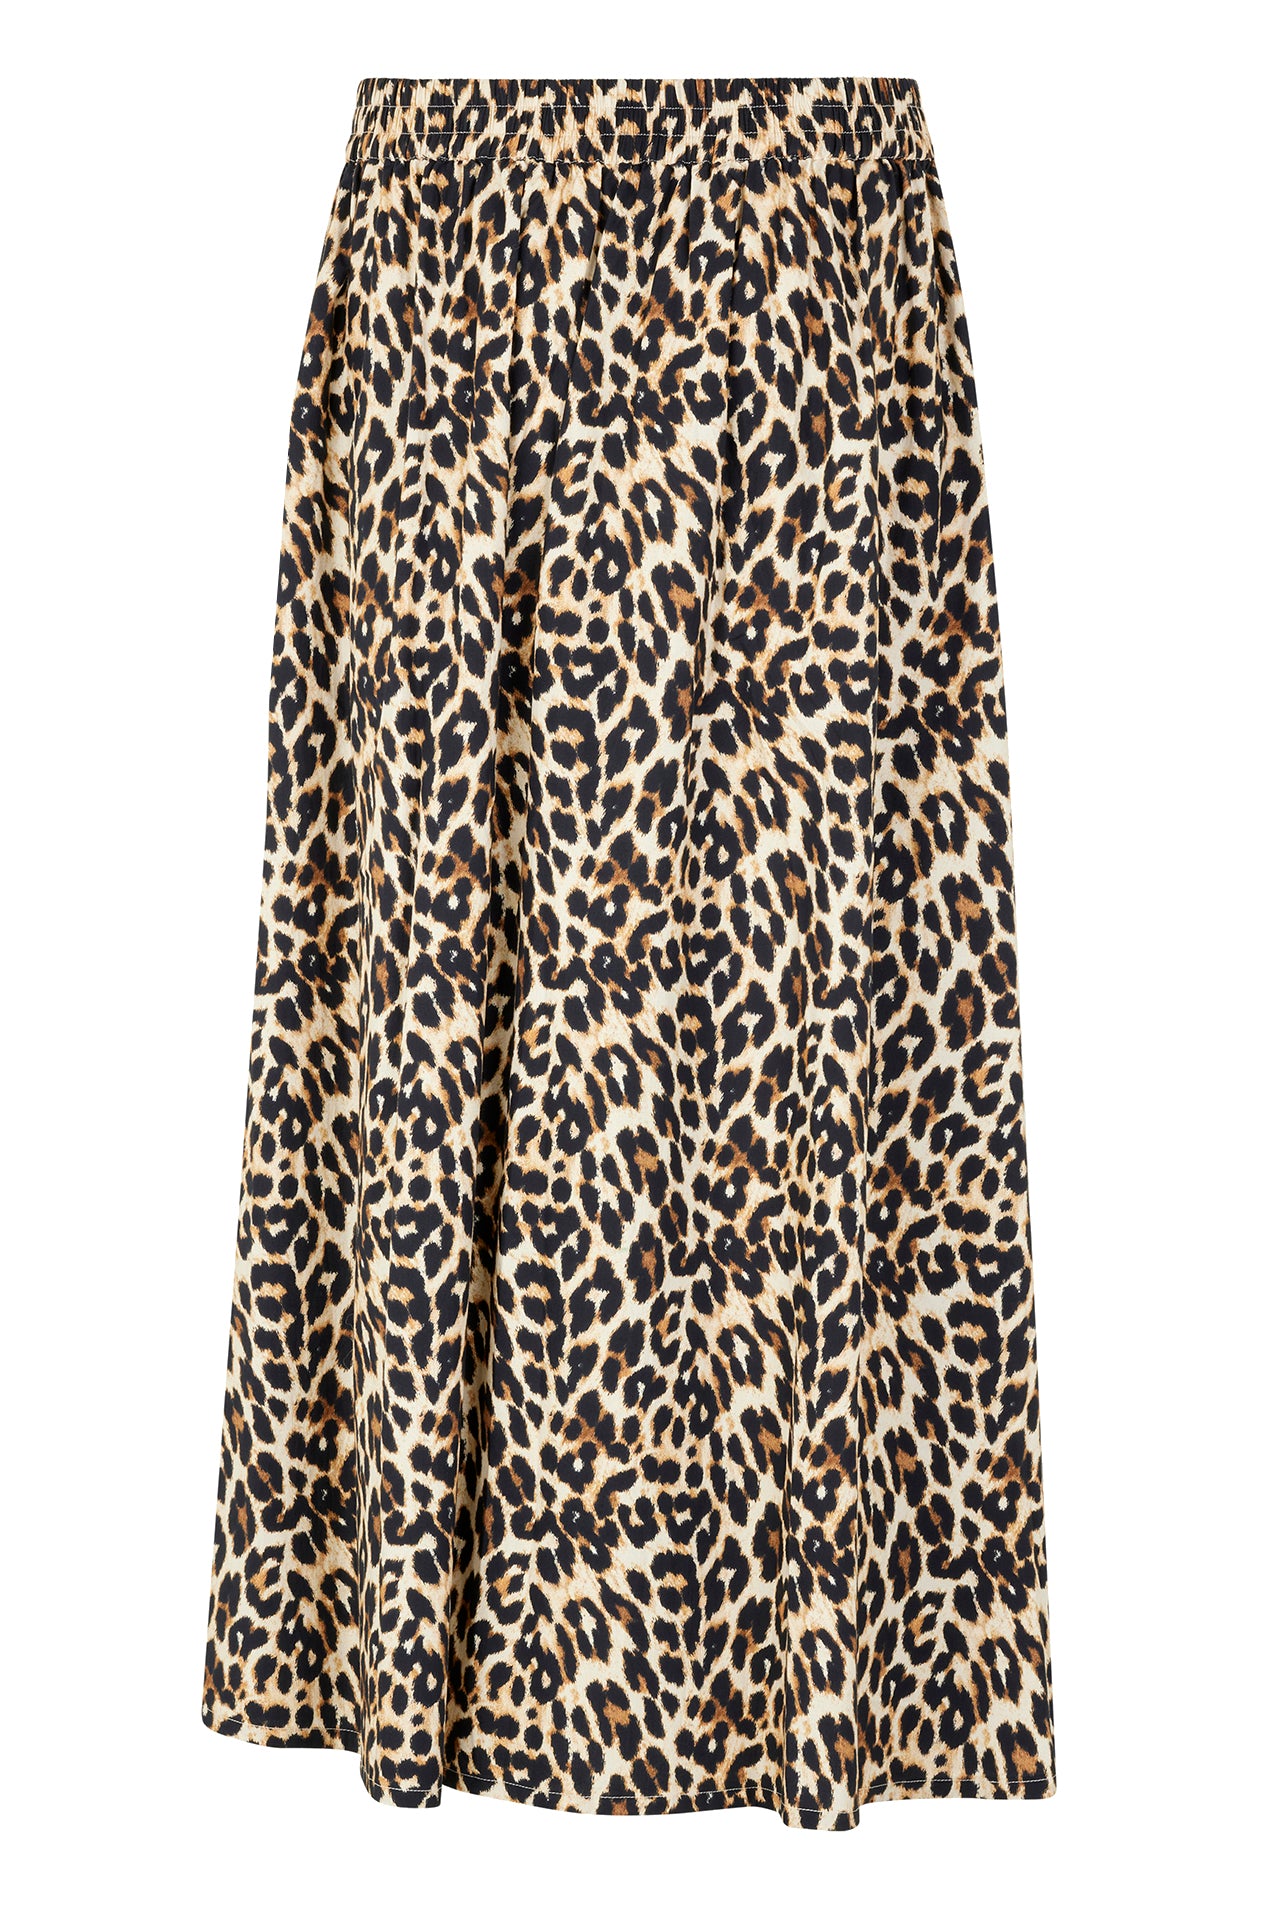 Lollys Laundry AkaneLL Maxi Skirt Skirt 72 Leopard Print